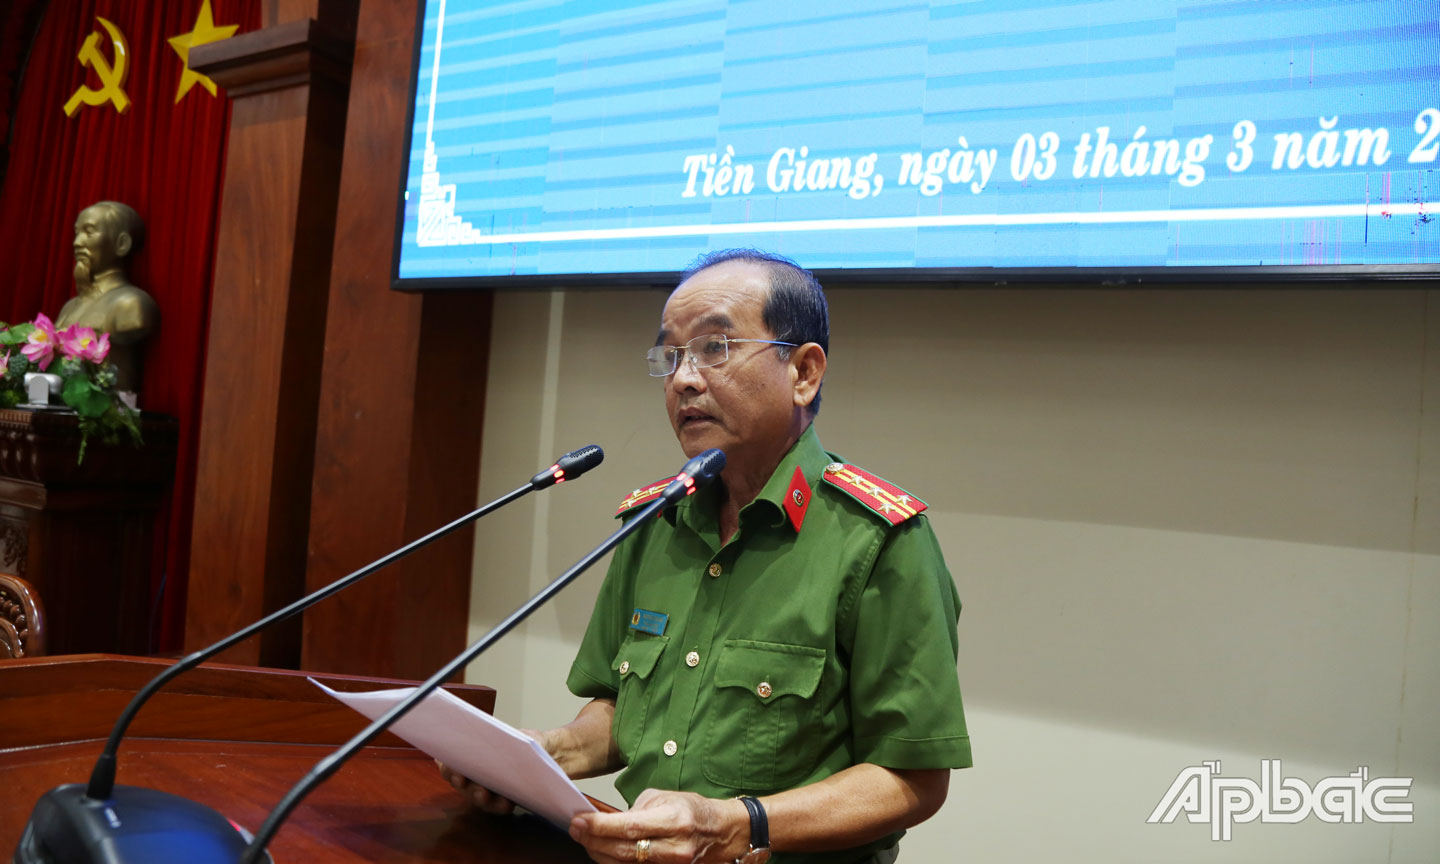 Đại tá Nguyễn Văn Tảo, Phó Giám đốc Công an tỉnh Tiền Giang phát biểu tại hội nghị.